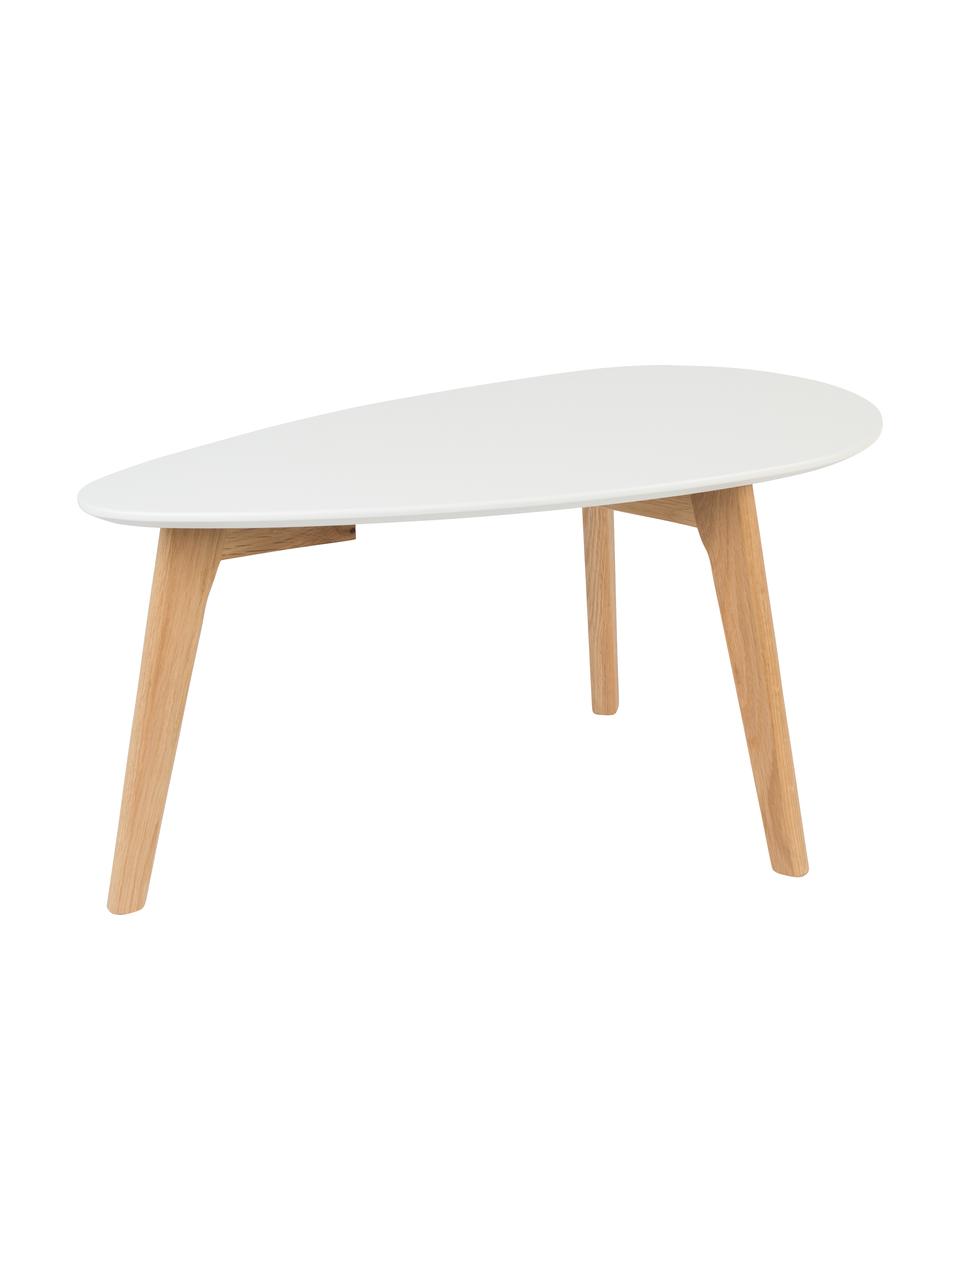 Oválny konferenčný stolík Nordic, 2 diely, Biela, dubové drevo, Súprava s rôznymi veľkosťami